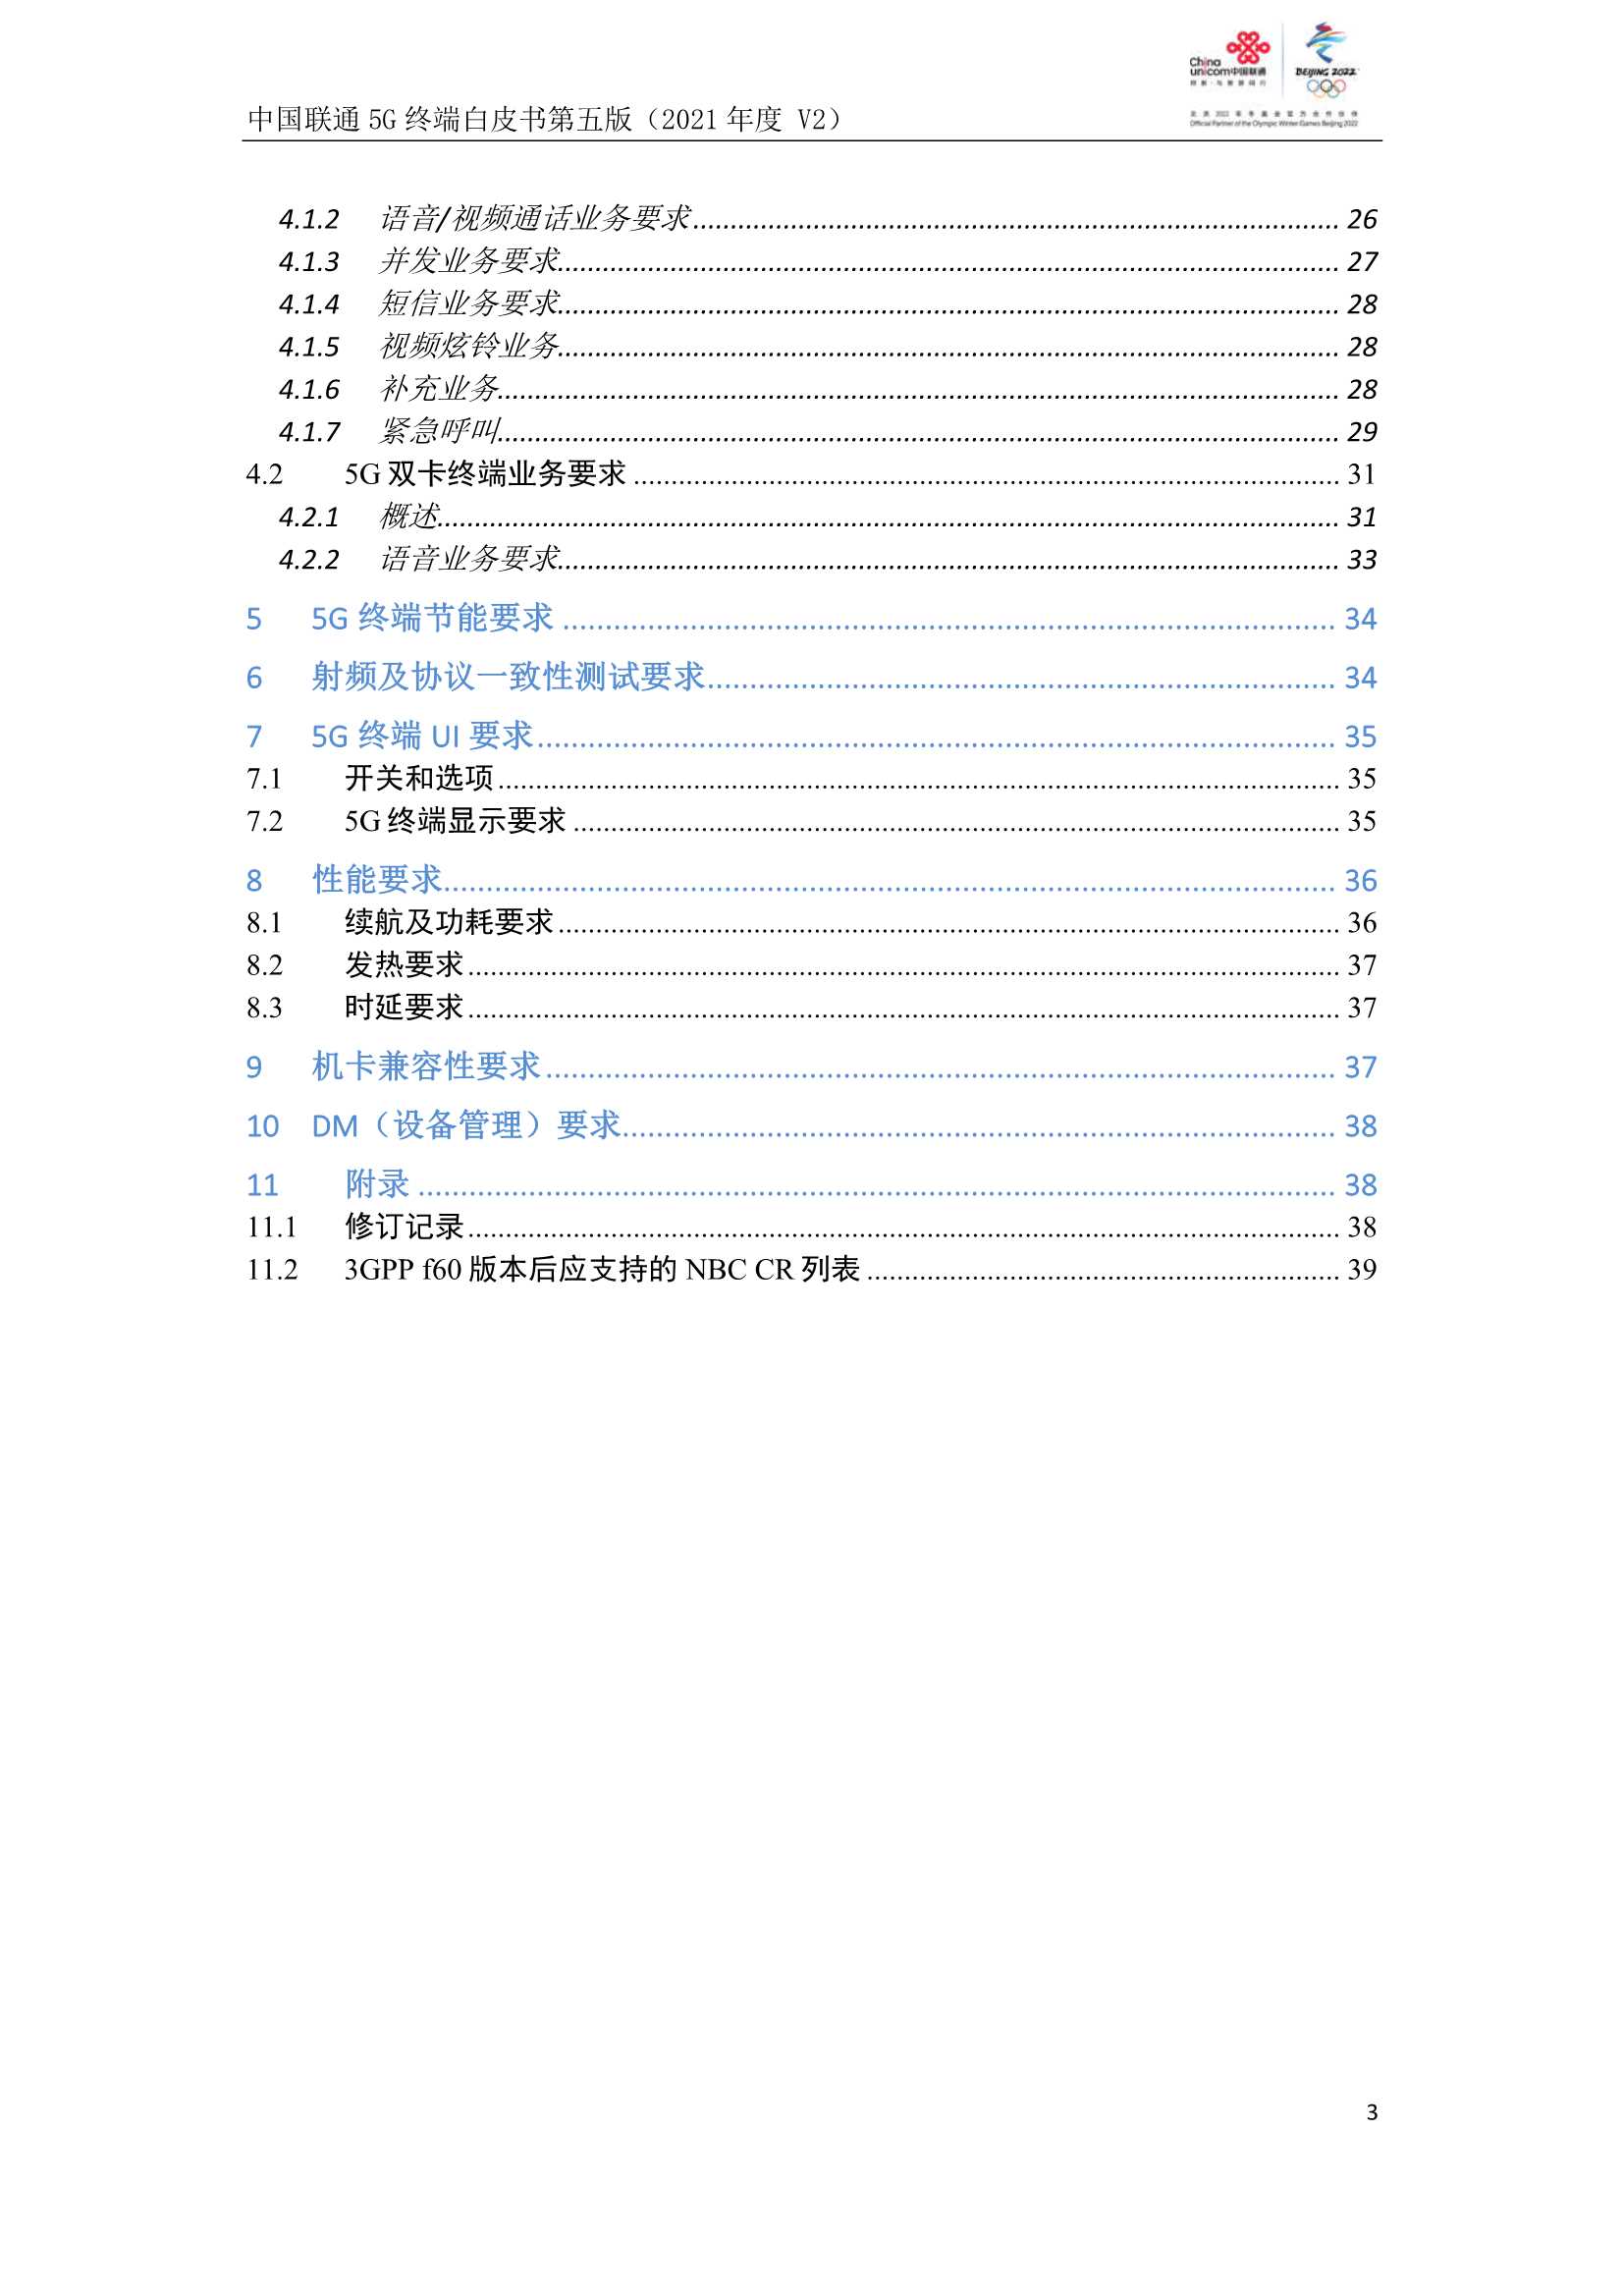 中国联通5G终端白皮书第五版（2021年度）-2021.12-40页